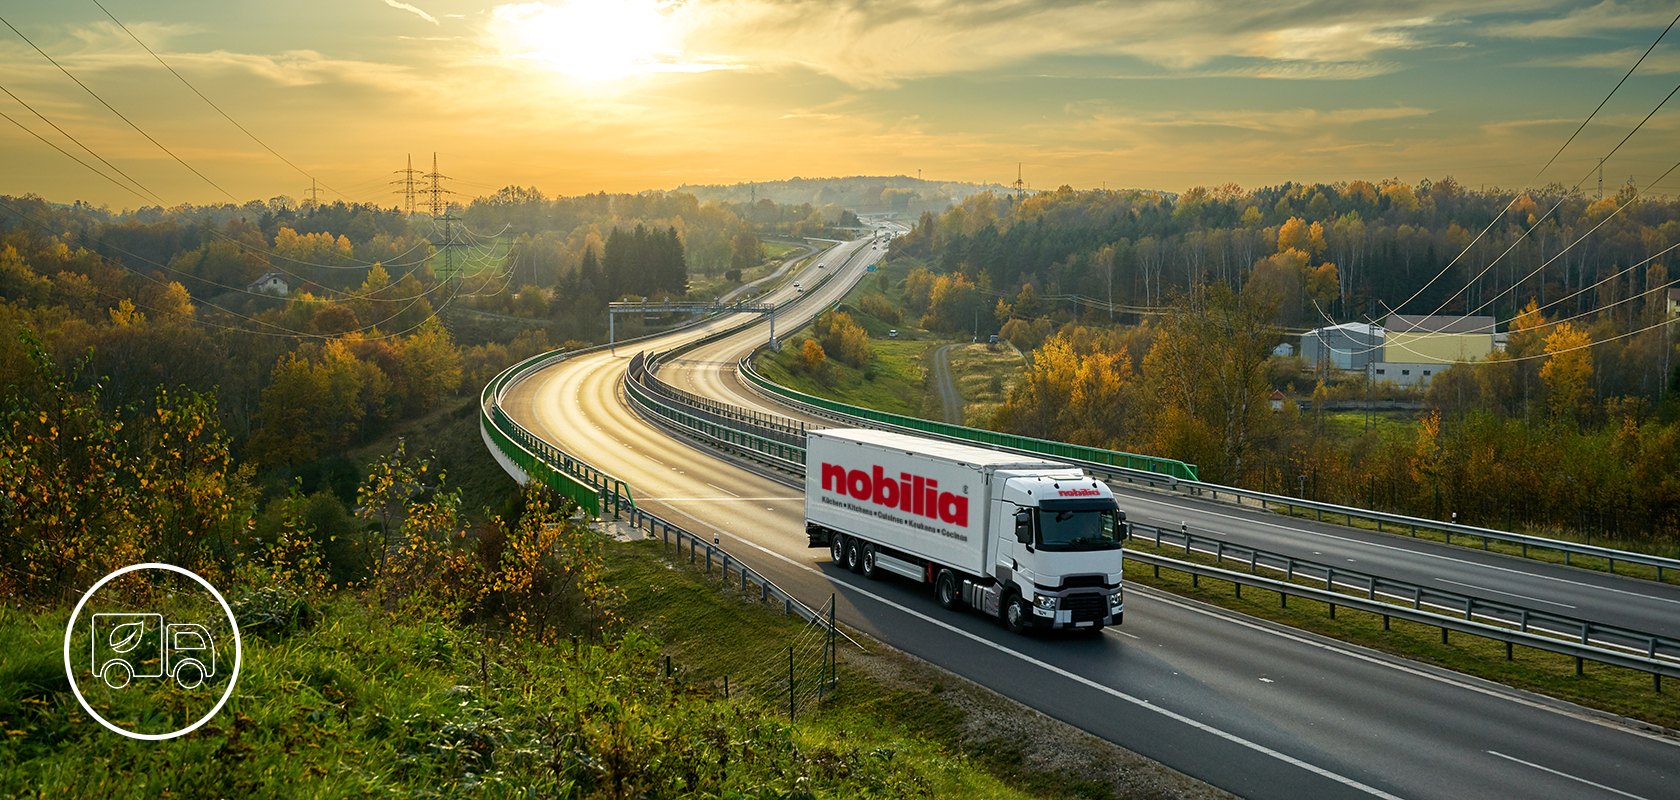 Nákladní automobil značky "nobilia" jede po klikaté dálnici uprostřed živé podzimní krajiny s listím a vzdálenými zvlněnými kopců.